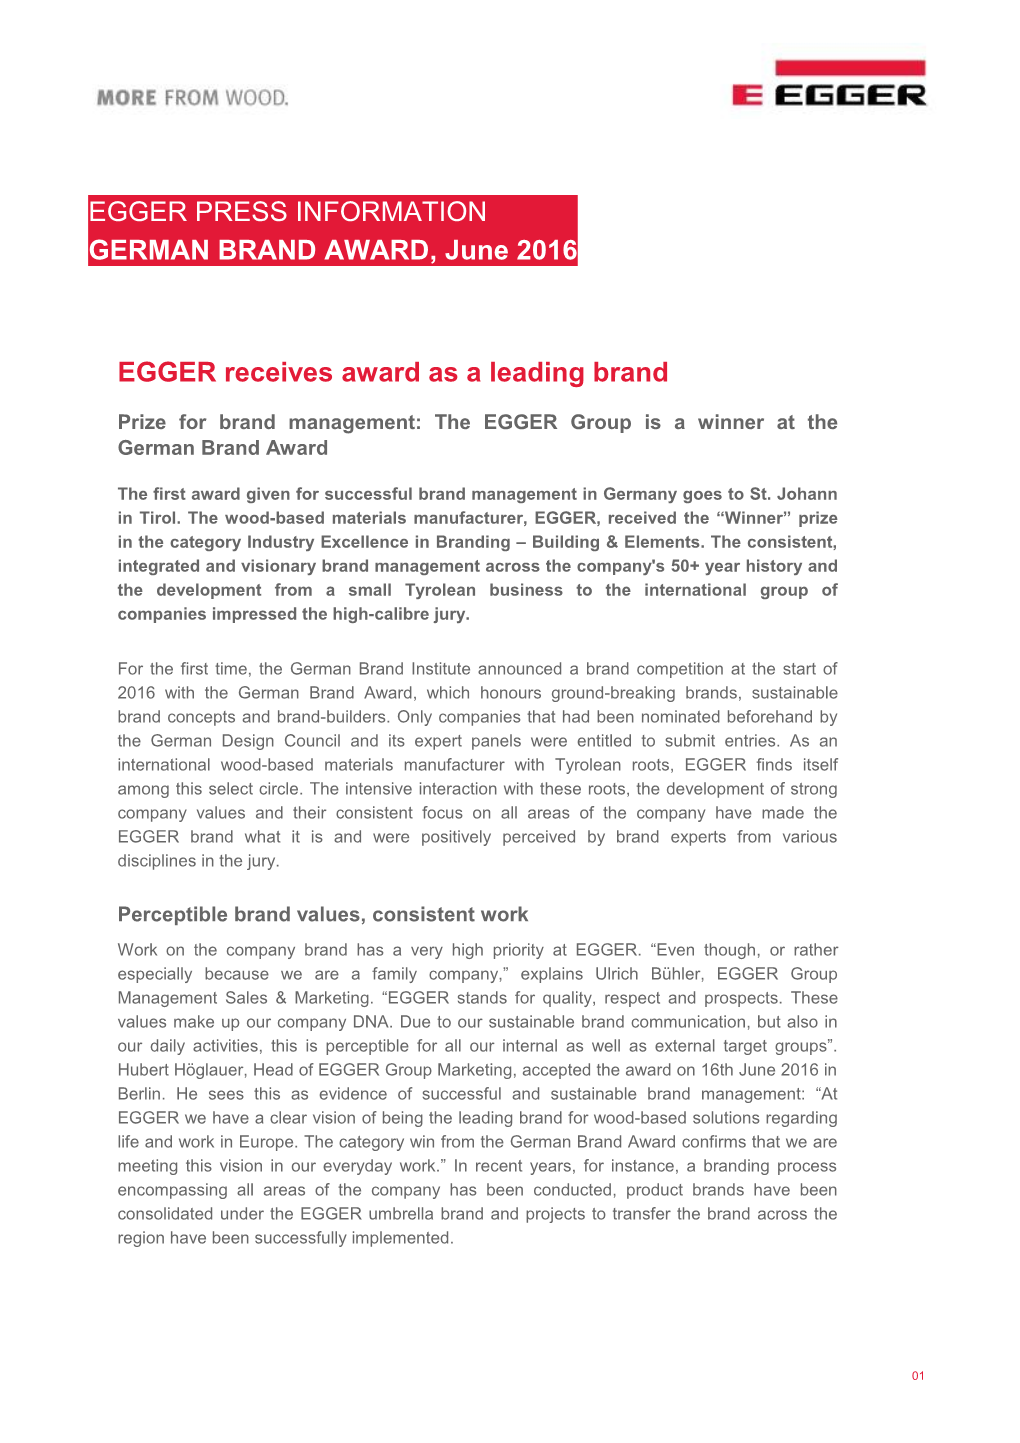 EGGER Receives Award As a Leading Brand